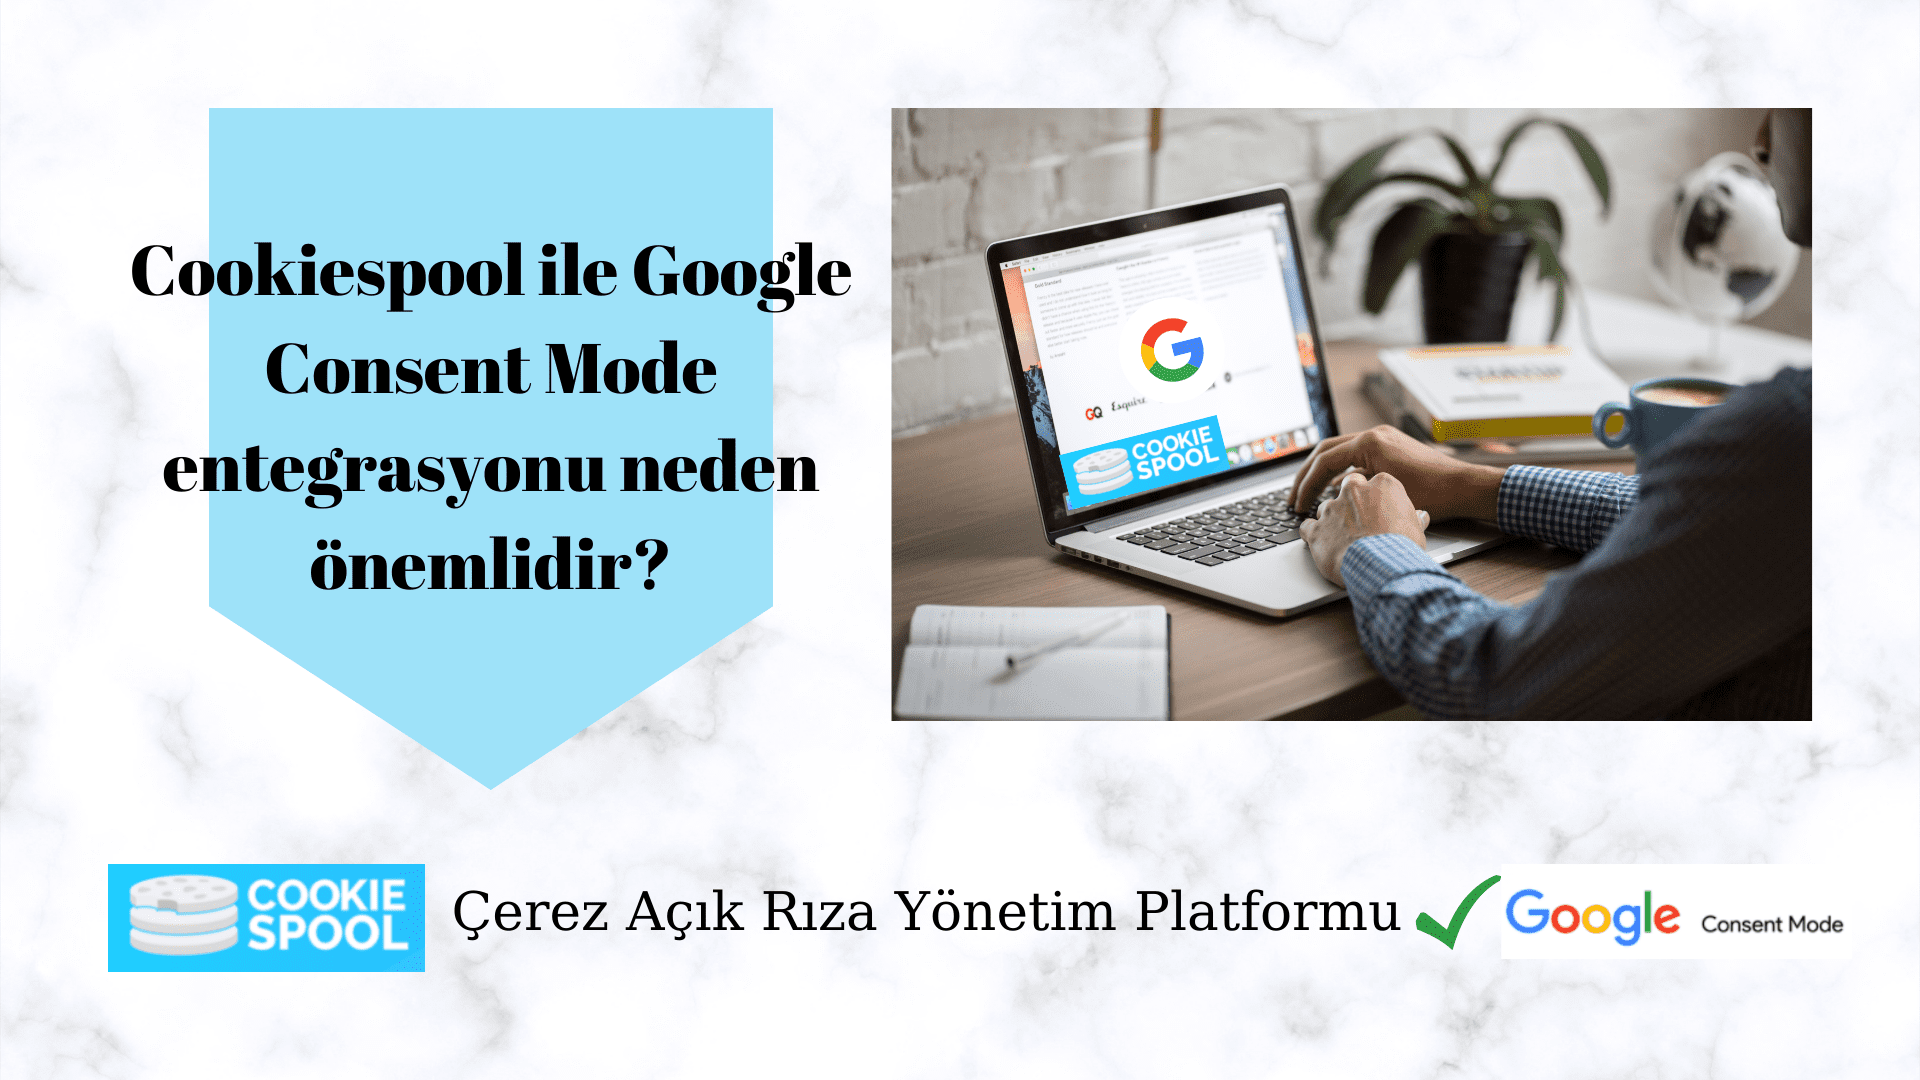 Cookiespool ile Google Consent Mode entegrasyonu neden önemlidir?  